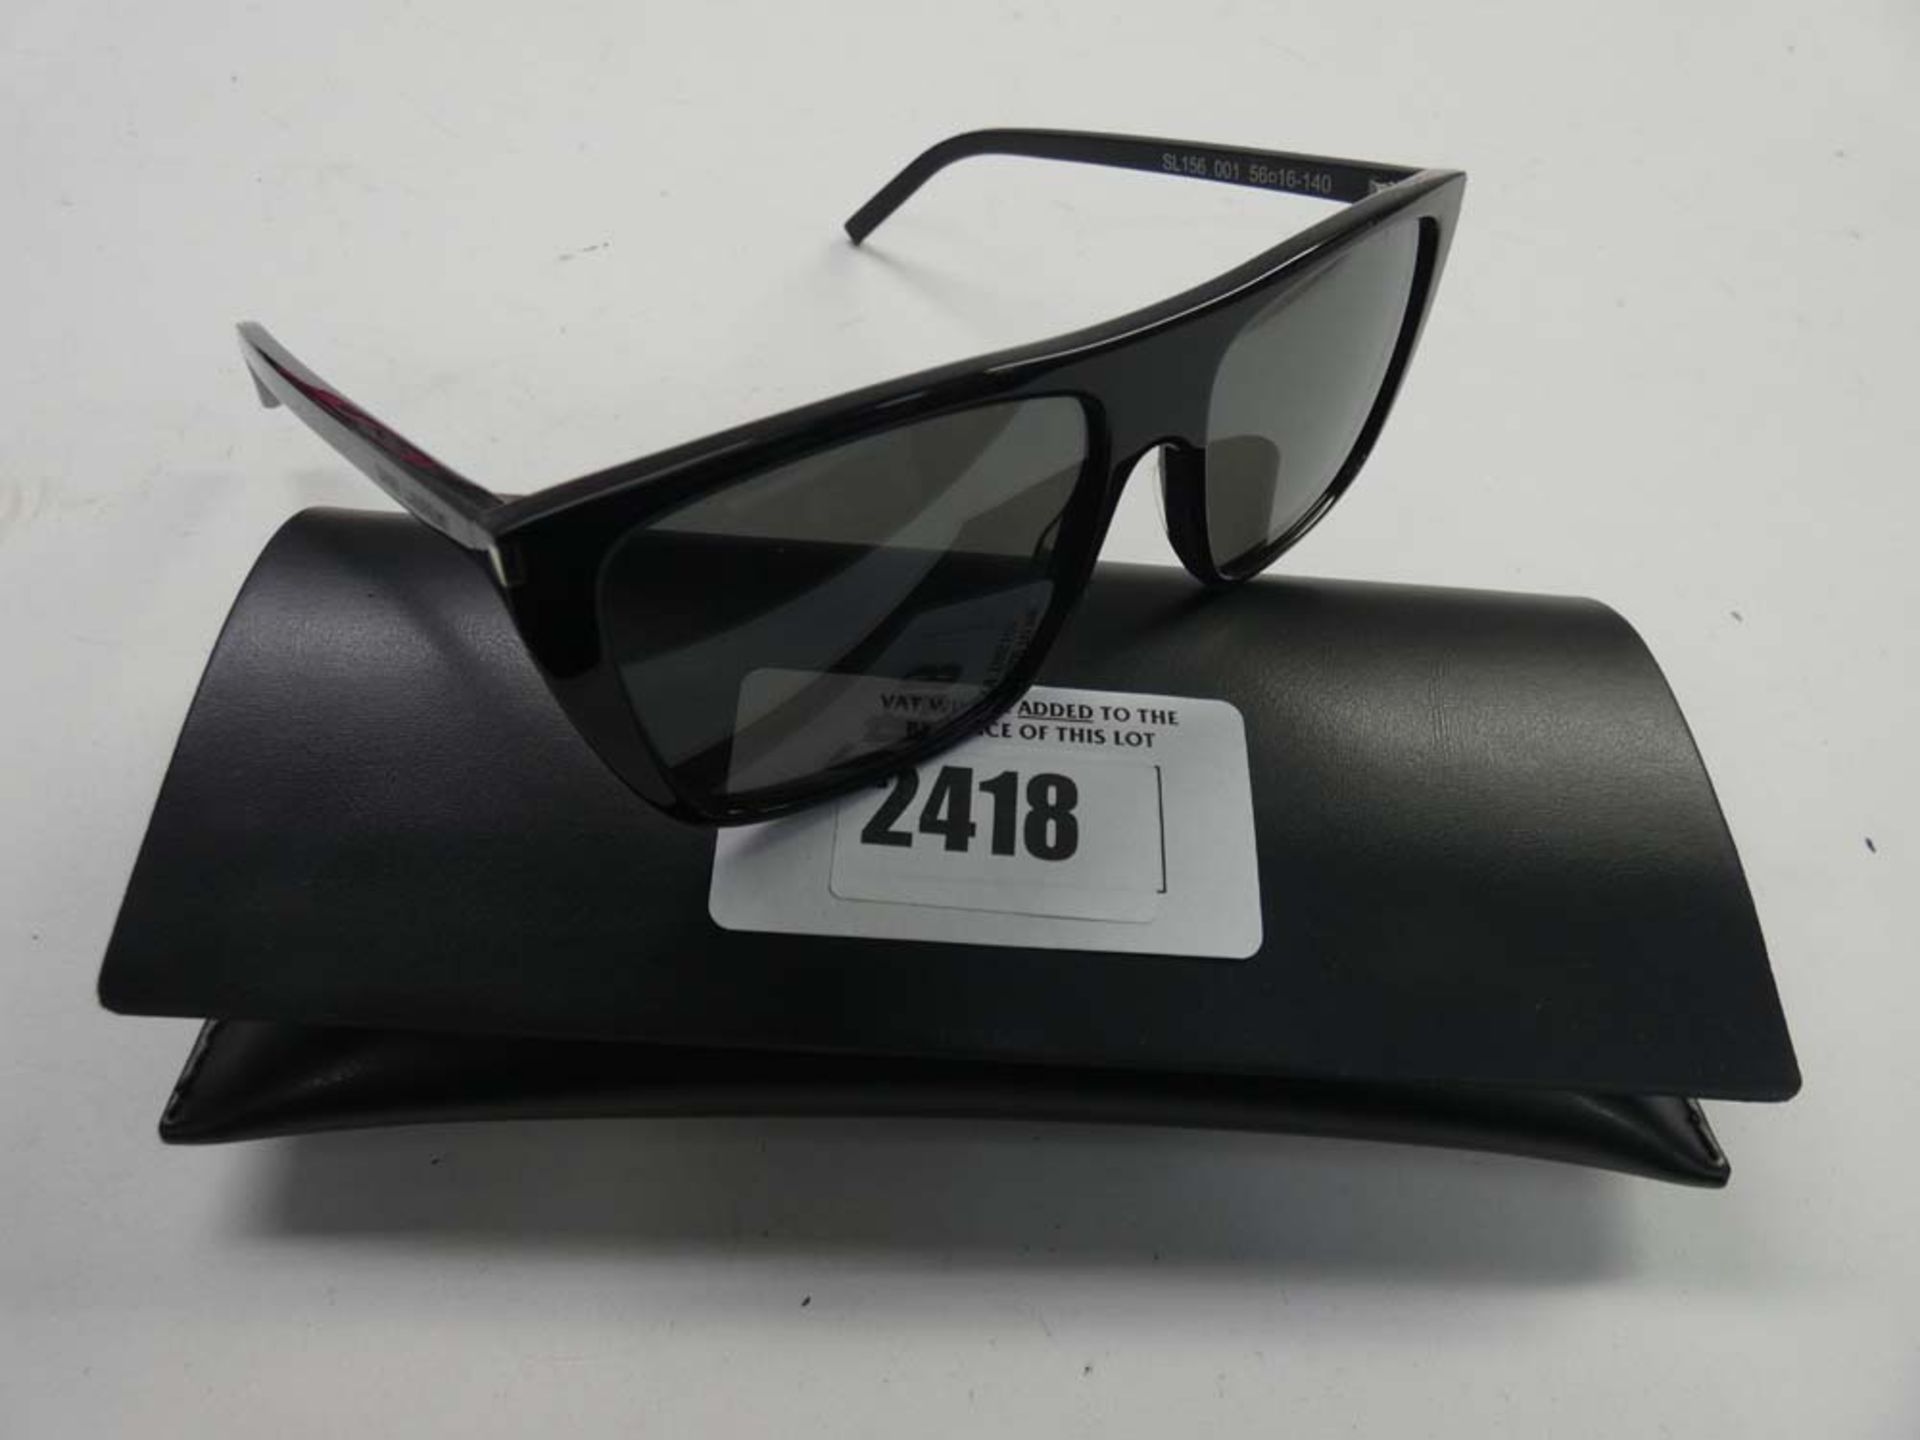 Saint Laurent SL156 sunglasses with case